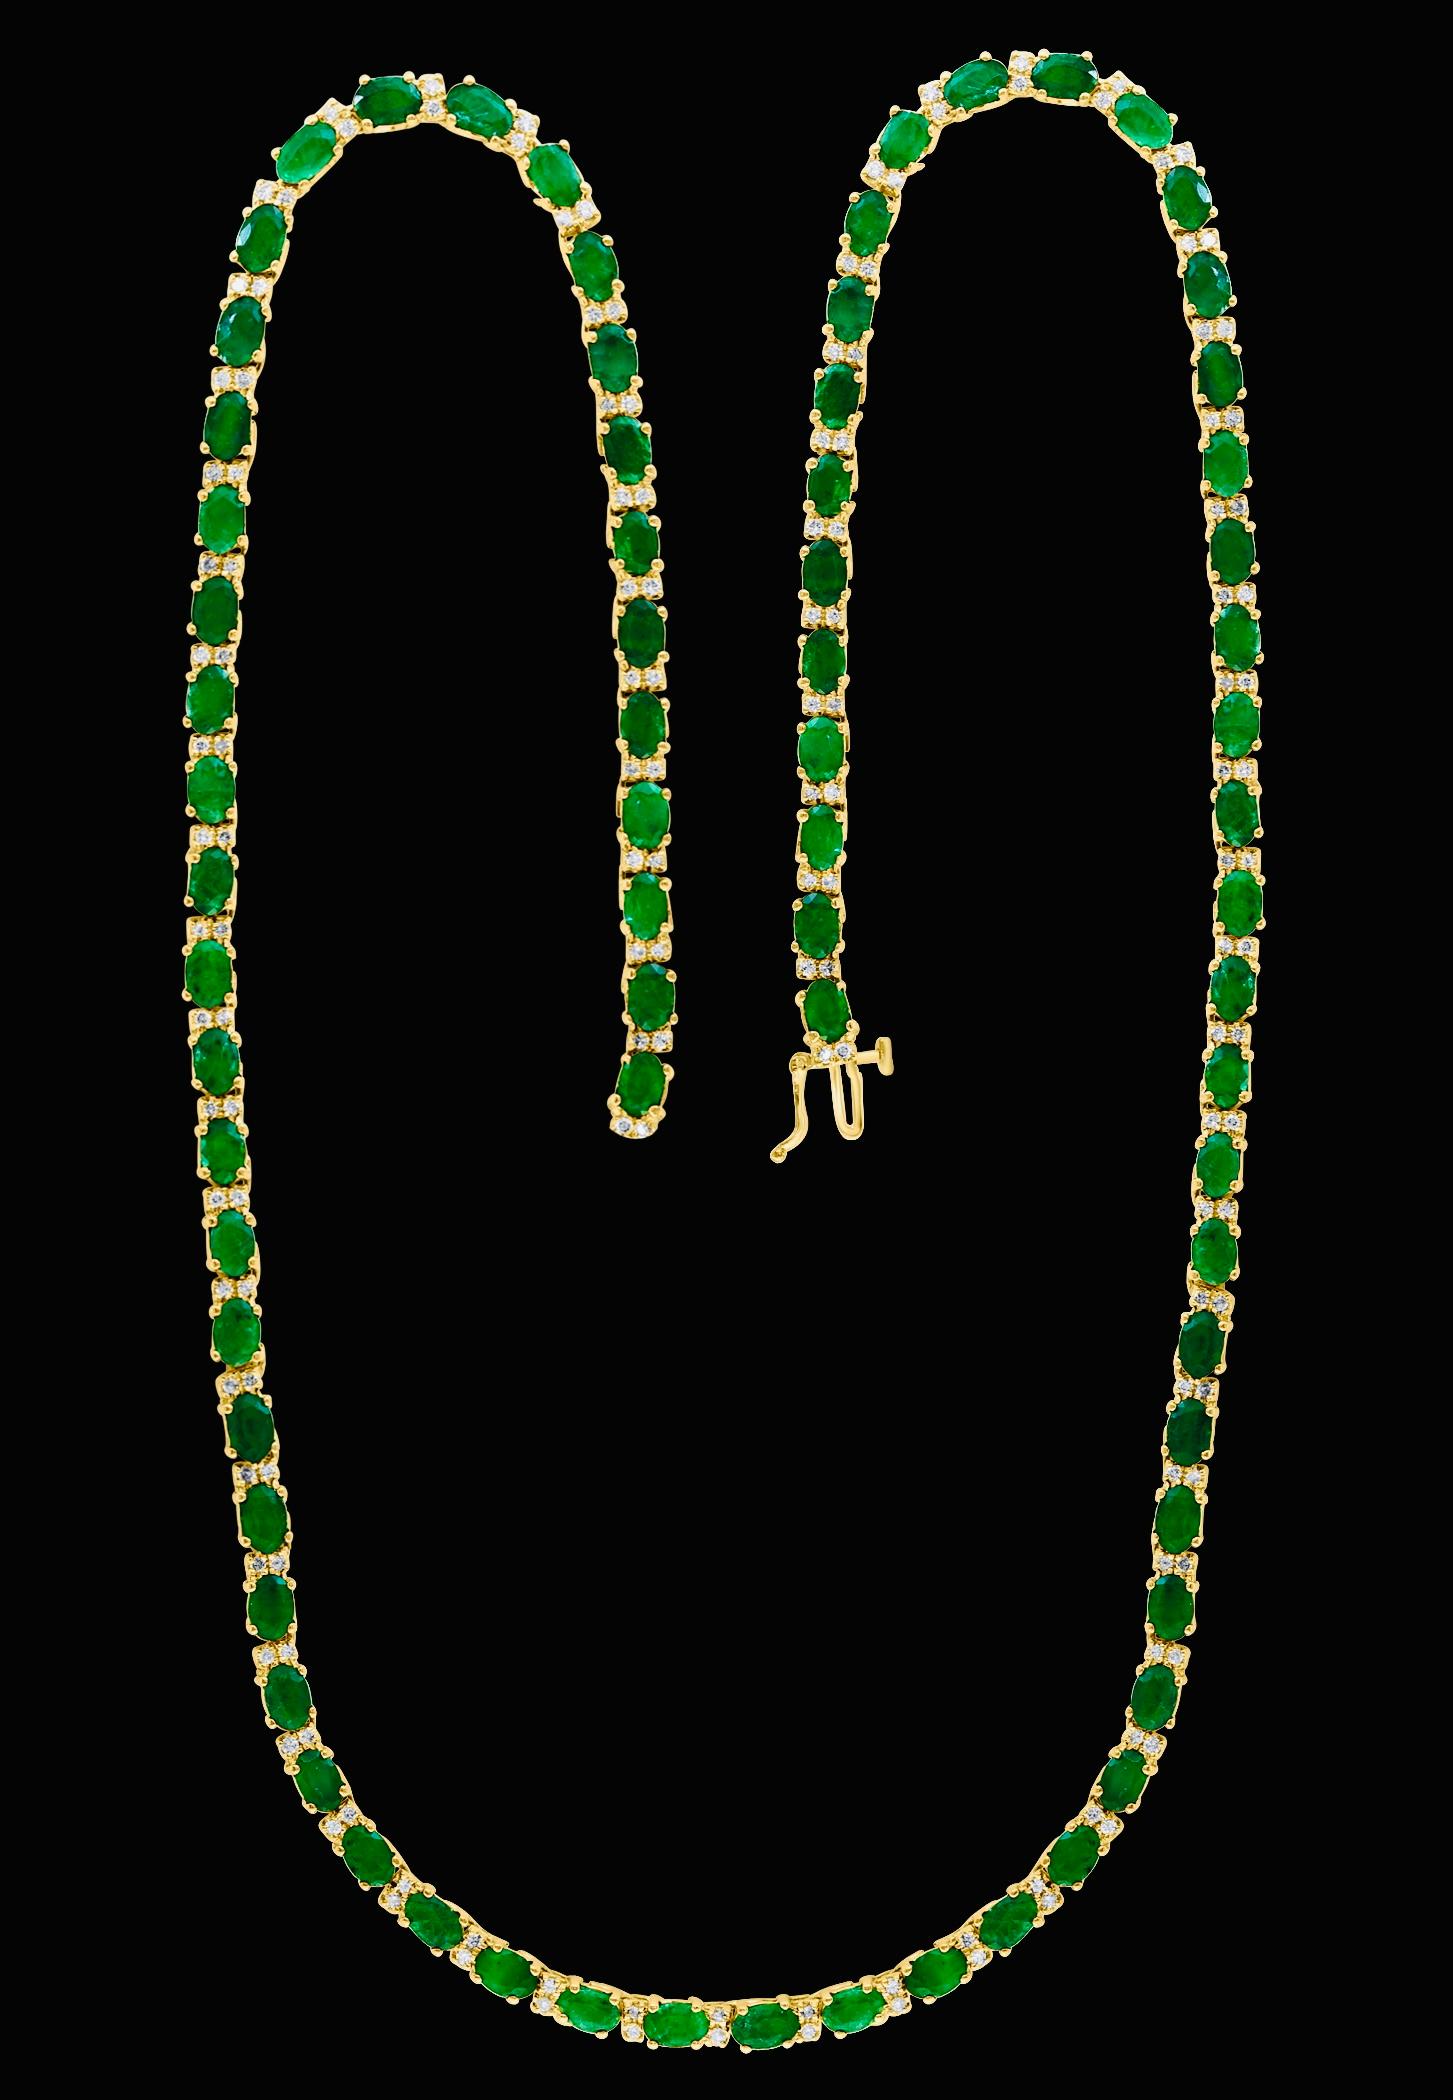 30 Carat Oval Brazilian Emerald & 3 Carat Diamond Tennis Necklace 14 Karat Gold For Sale 7